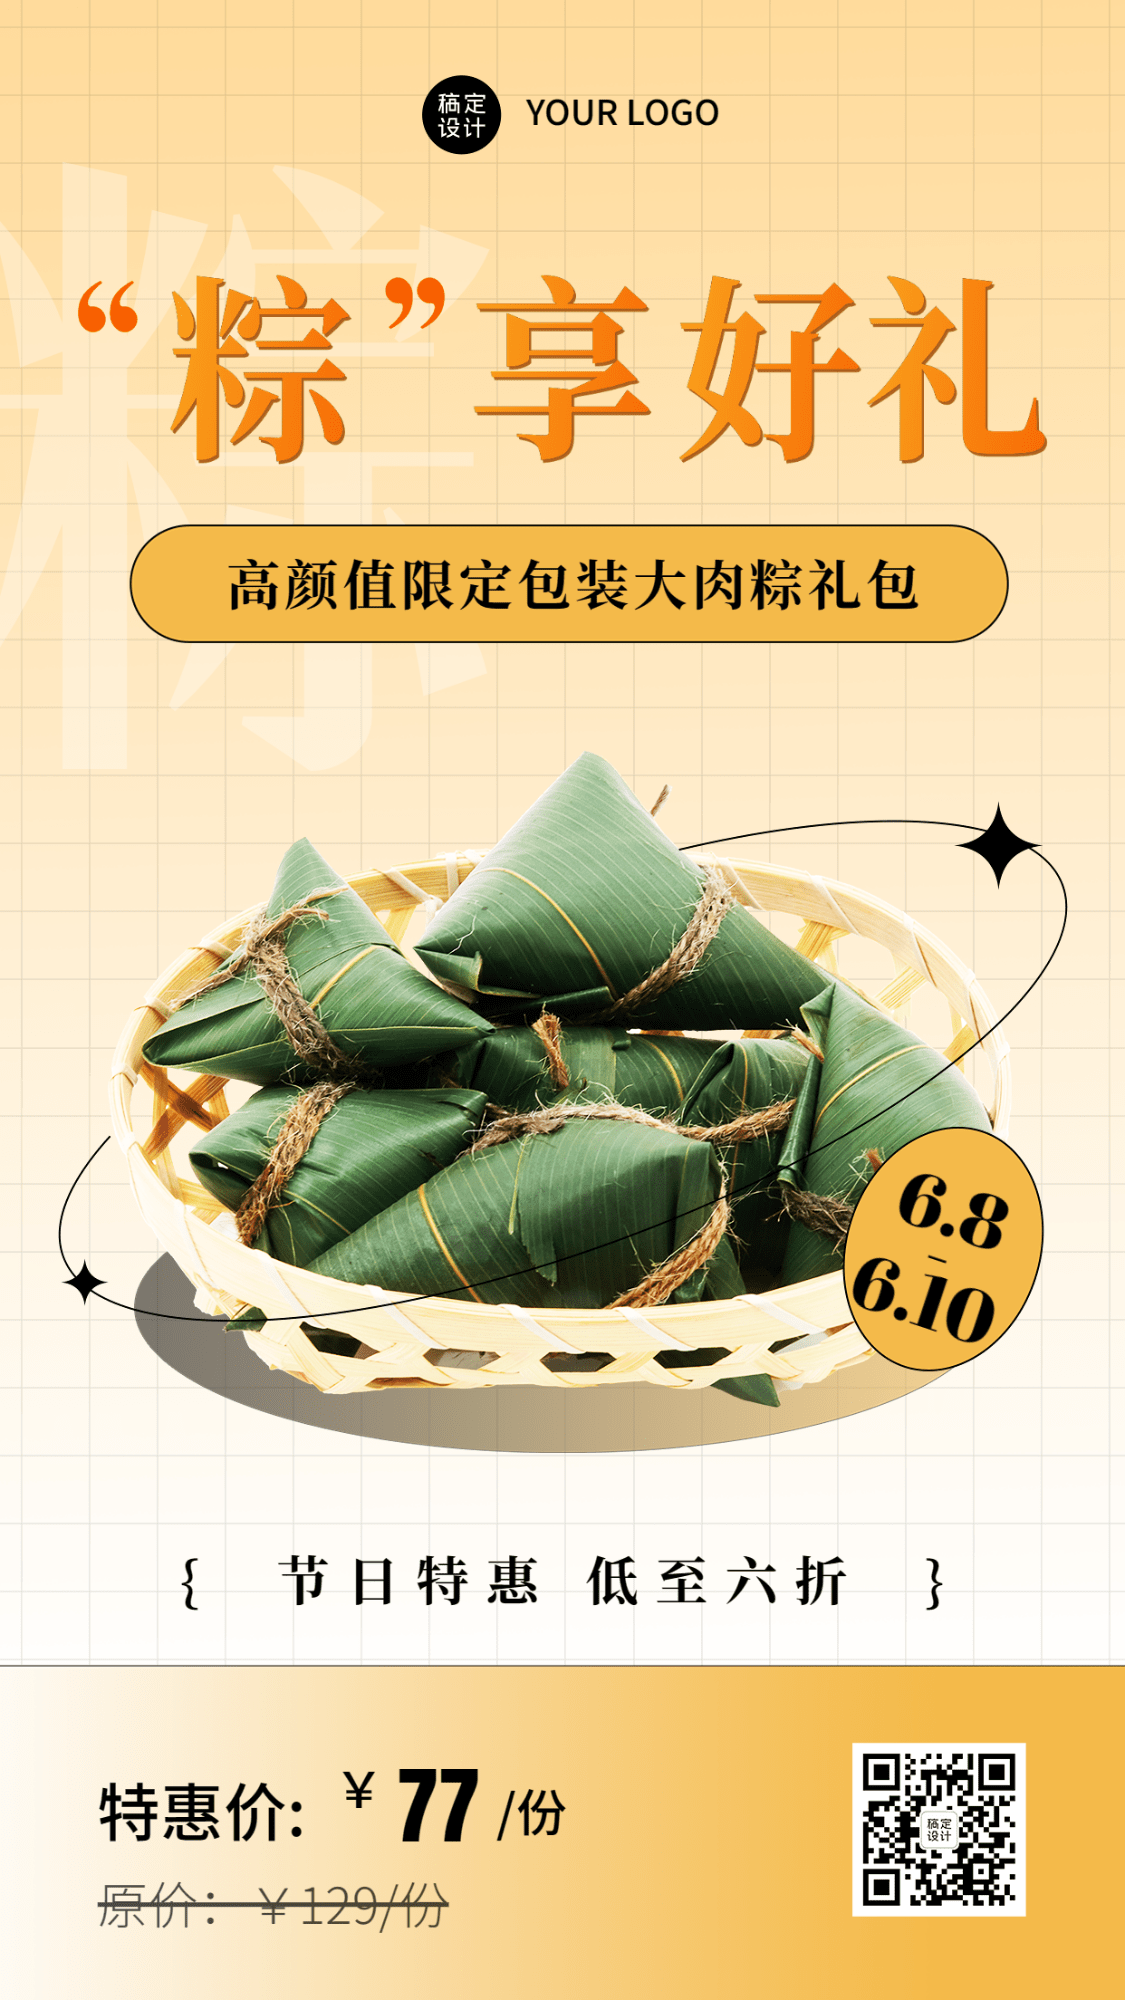 端午节餐饮粽子产品营销手机海报